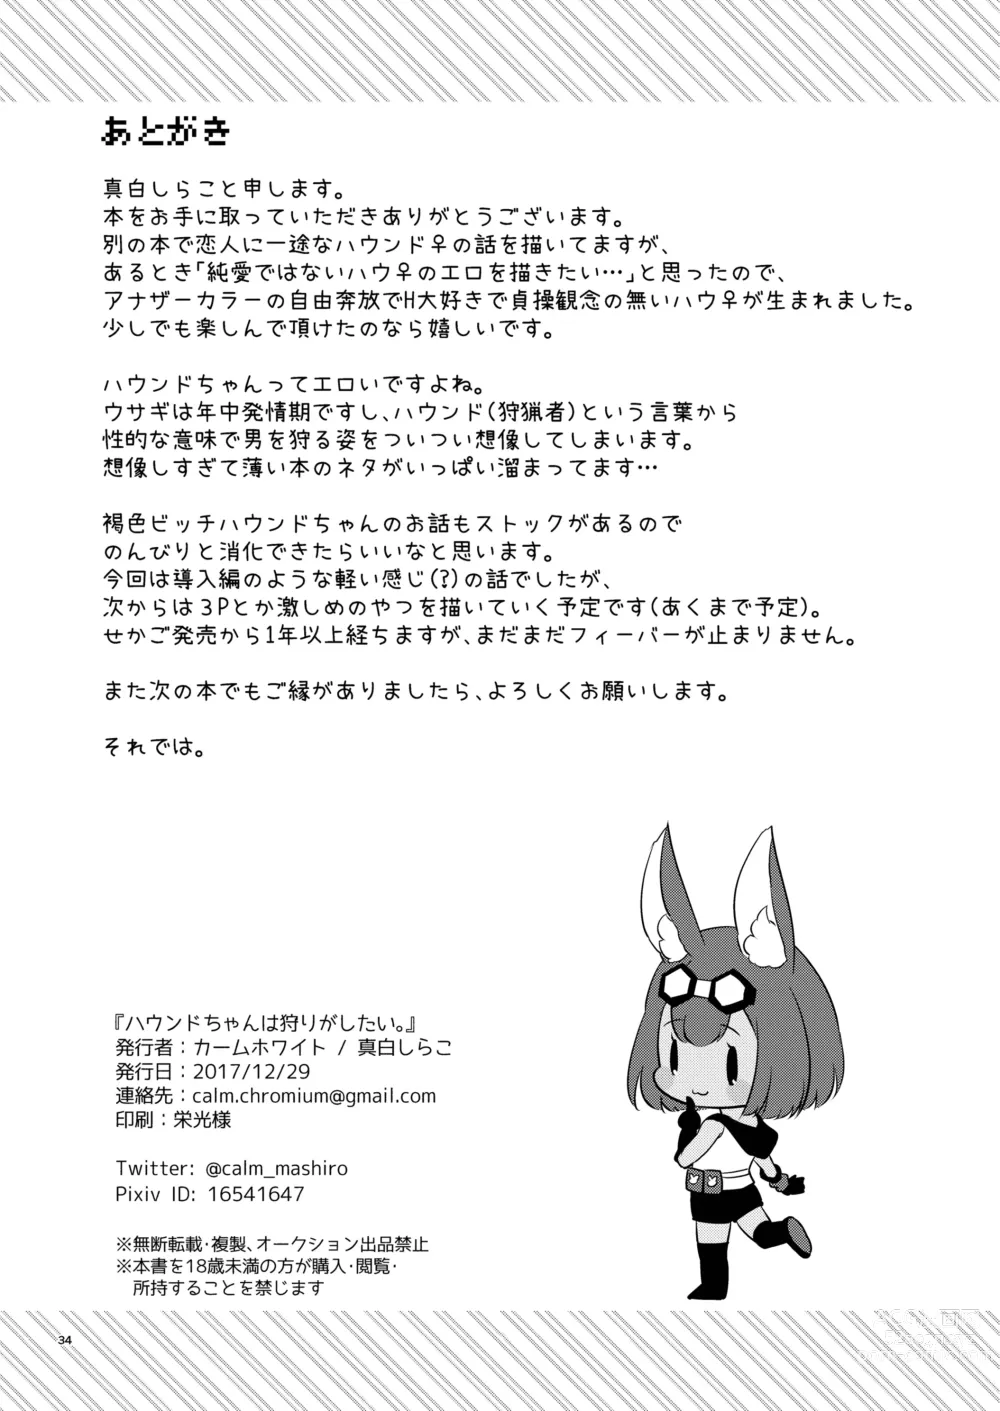 Page 34 of doujinshi Hound-chan wa Ecchi ga Shitai.